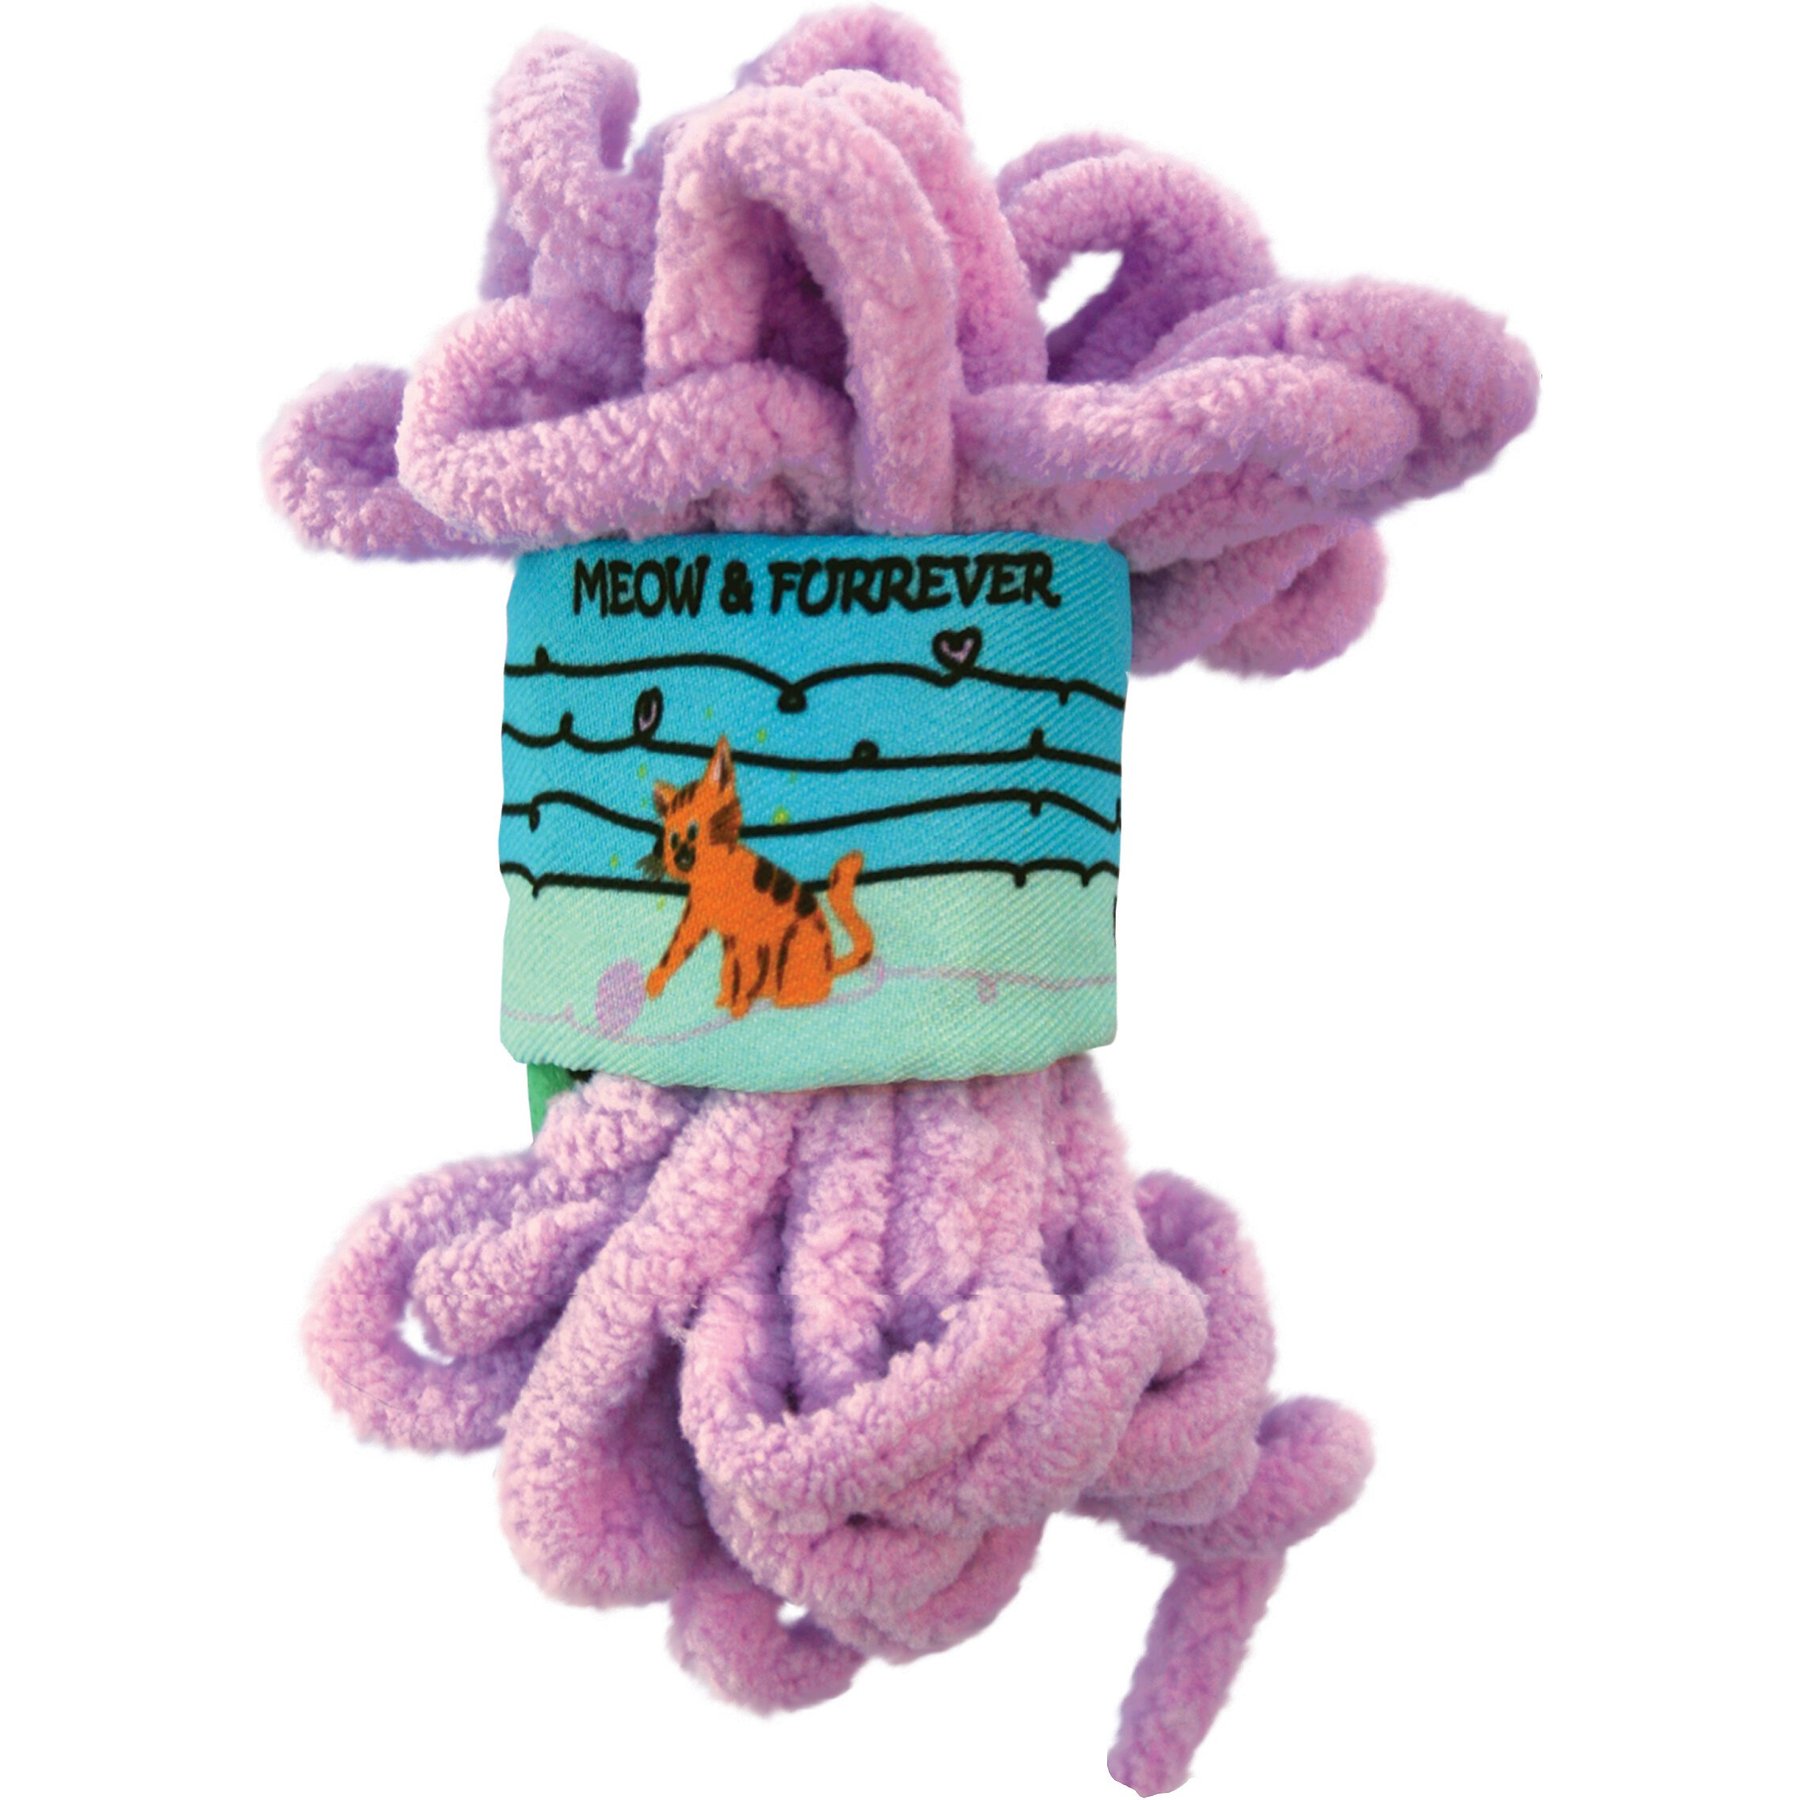 Yarnplaza Cuddly Toy Cat Crochet Kit